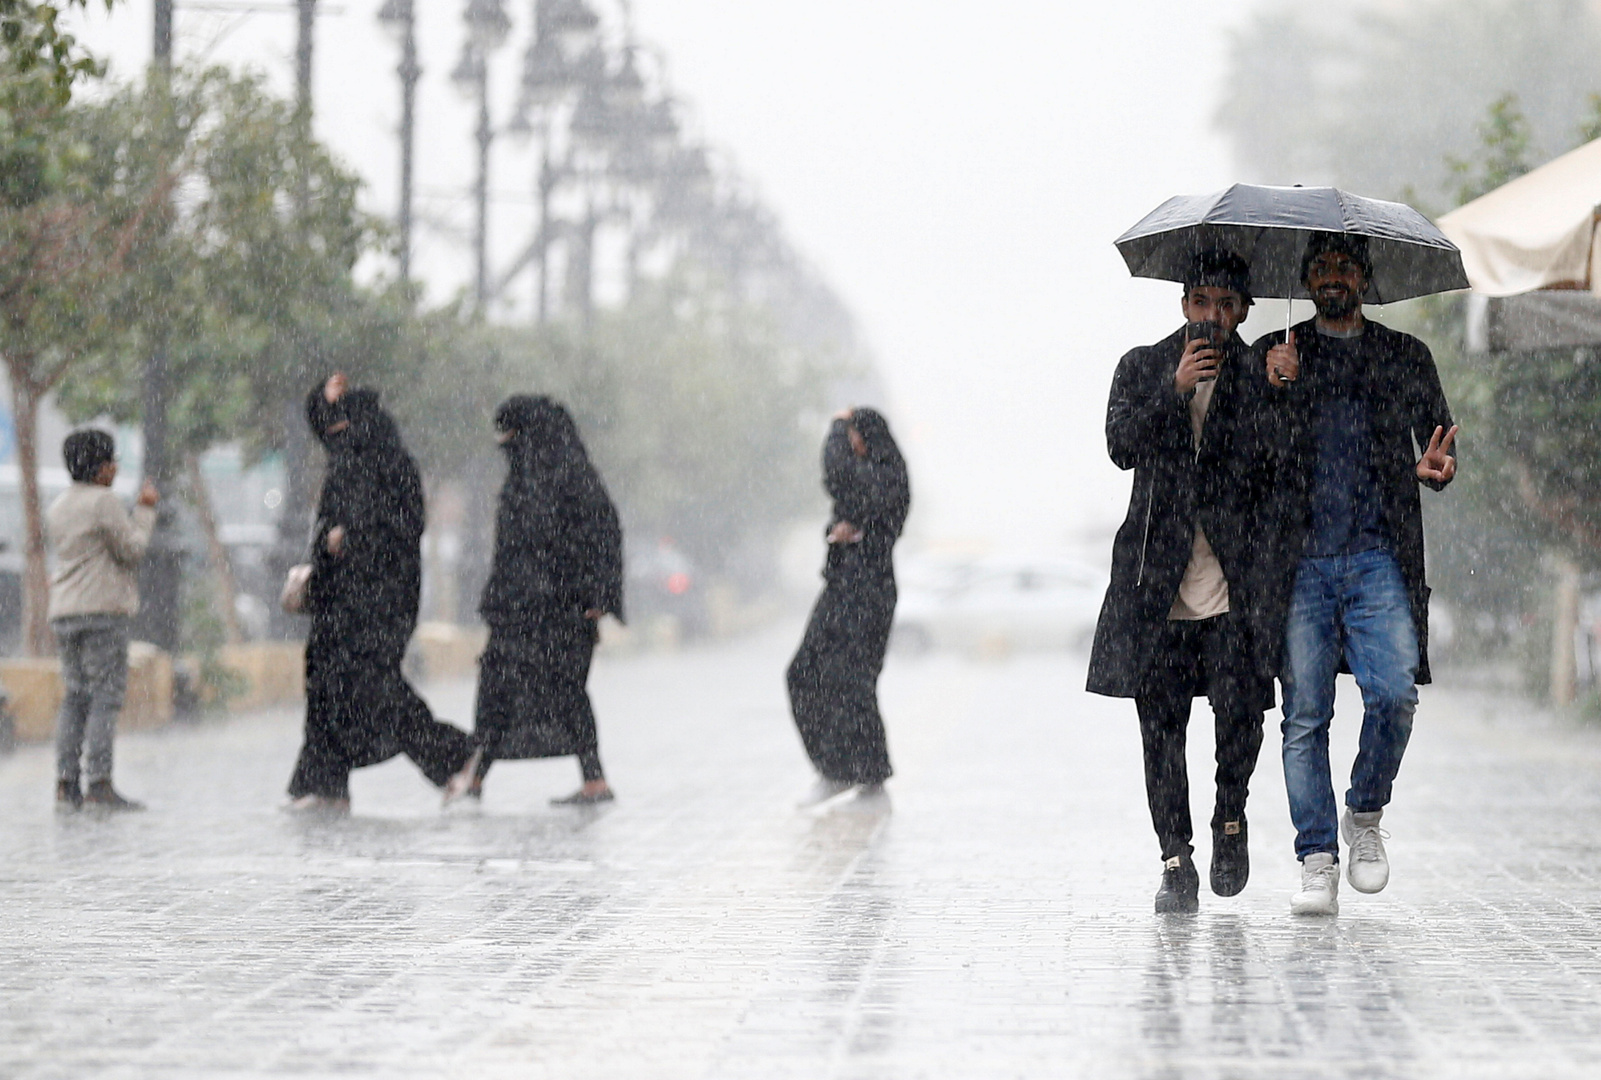 أمطار غزيرة في منطقة جازان السعودية وعقوبات على المتهورين (فيديوهات)